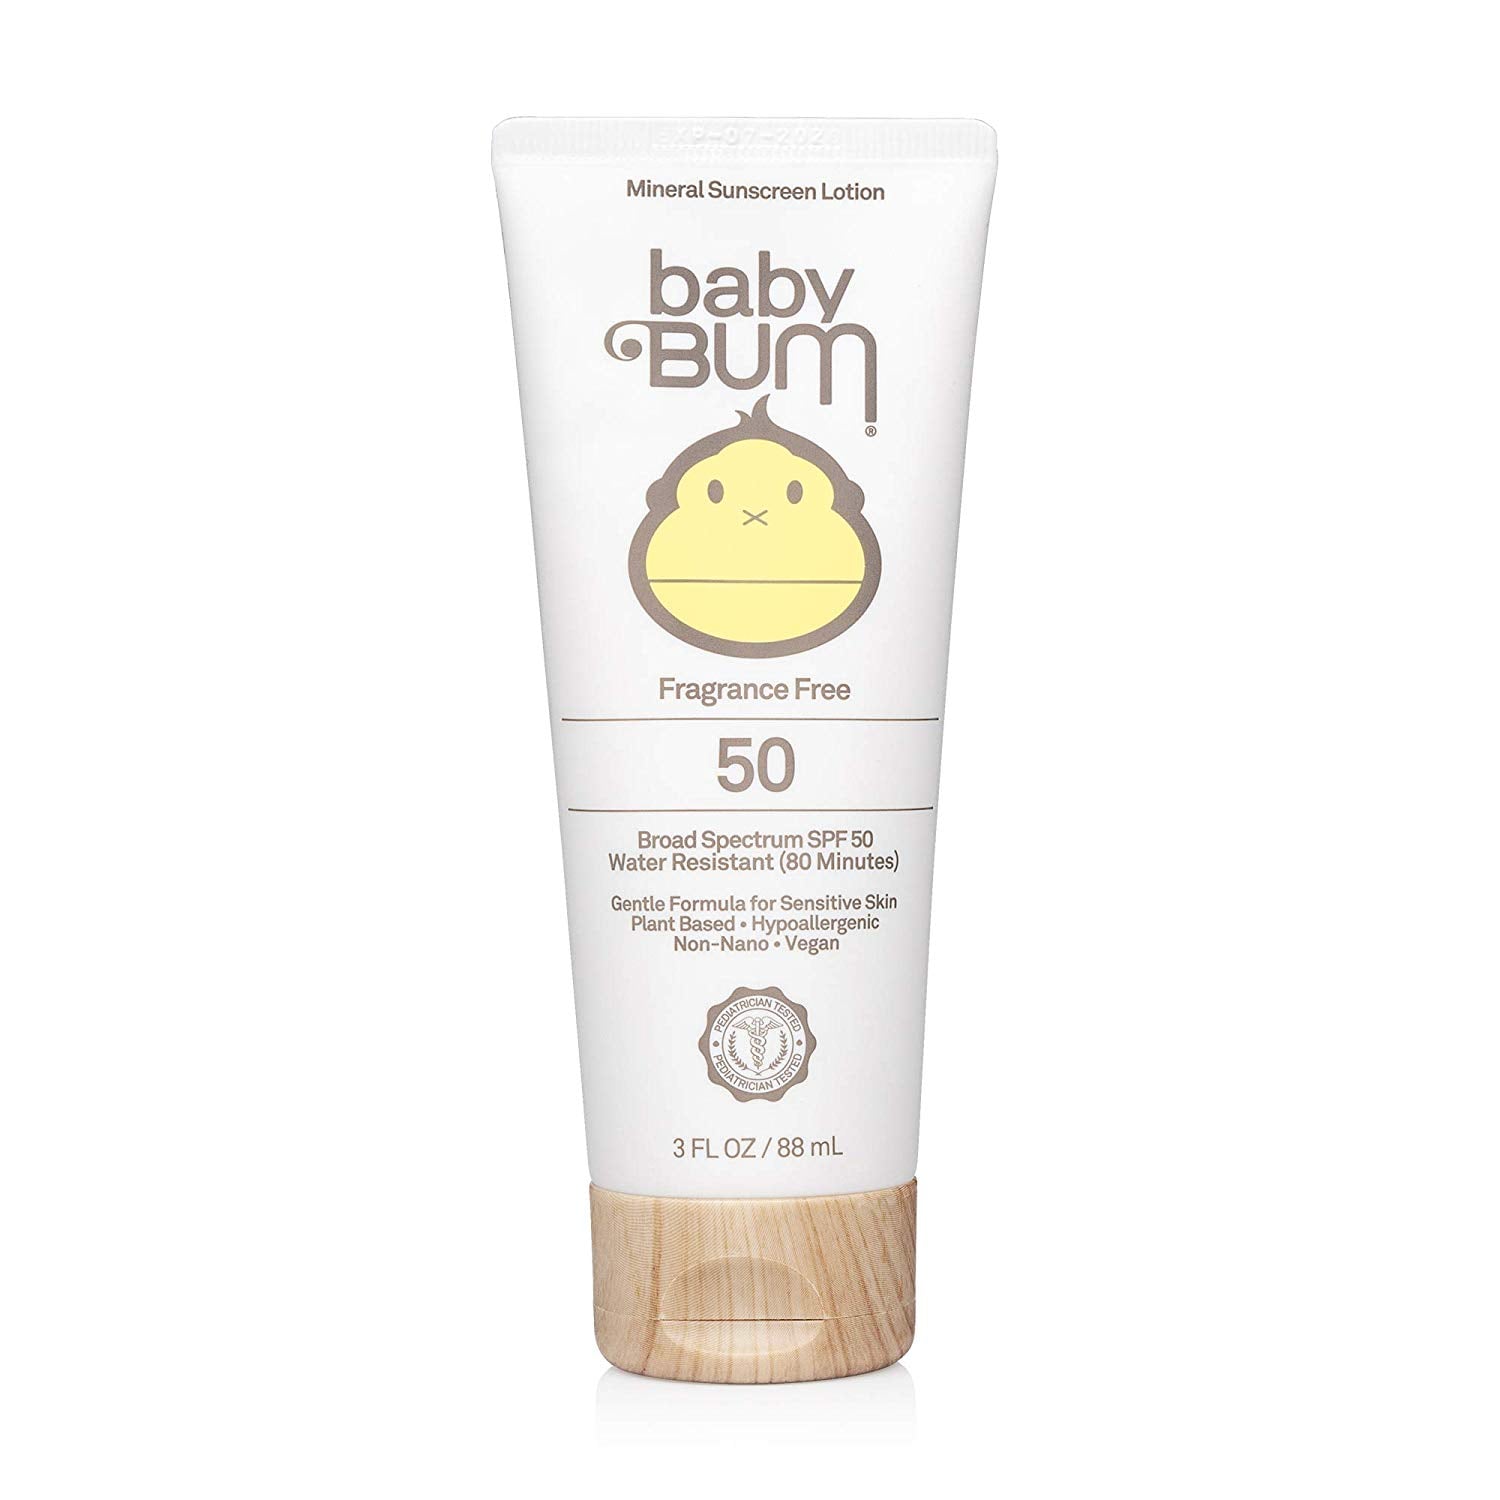 best baby sunscreen 2019